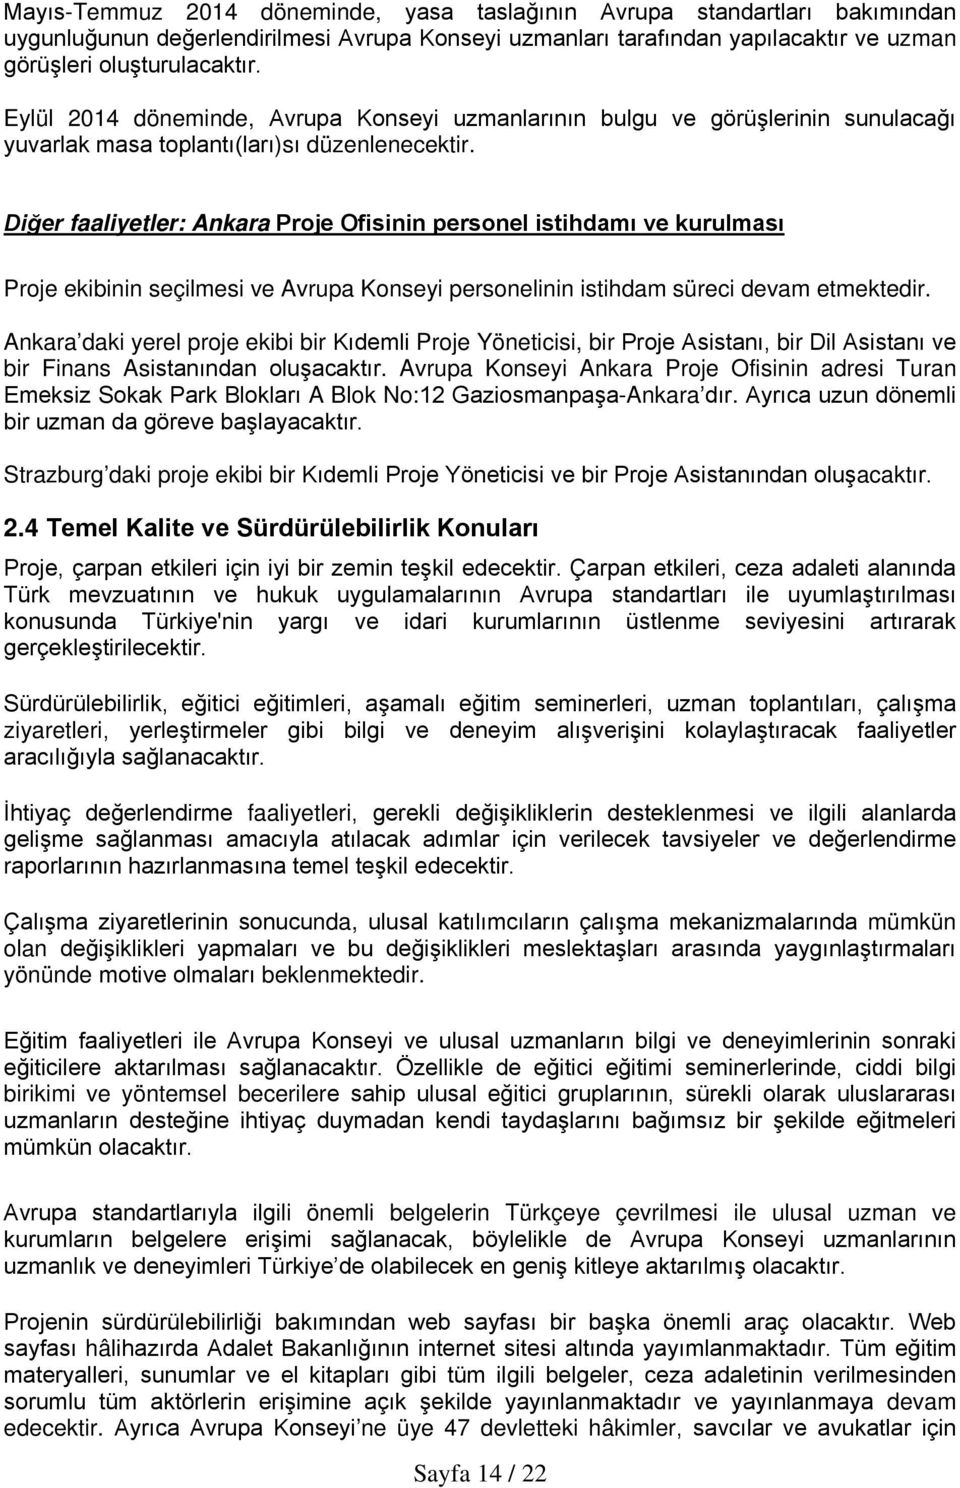 Diğer faaliyetler: Ankara Proje Ofisinin personel istihdamı ve kurulması Proje ekibinin seçilmesi ve Avrupa Konseyi personelinin istihdam süreci devam etmektedir.